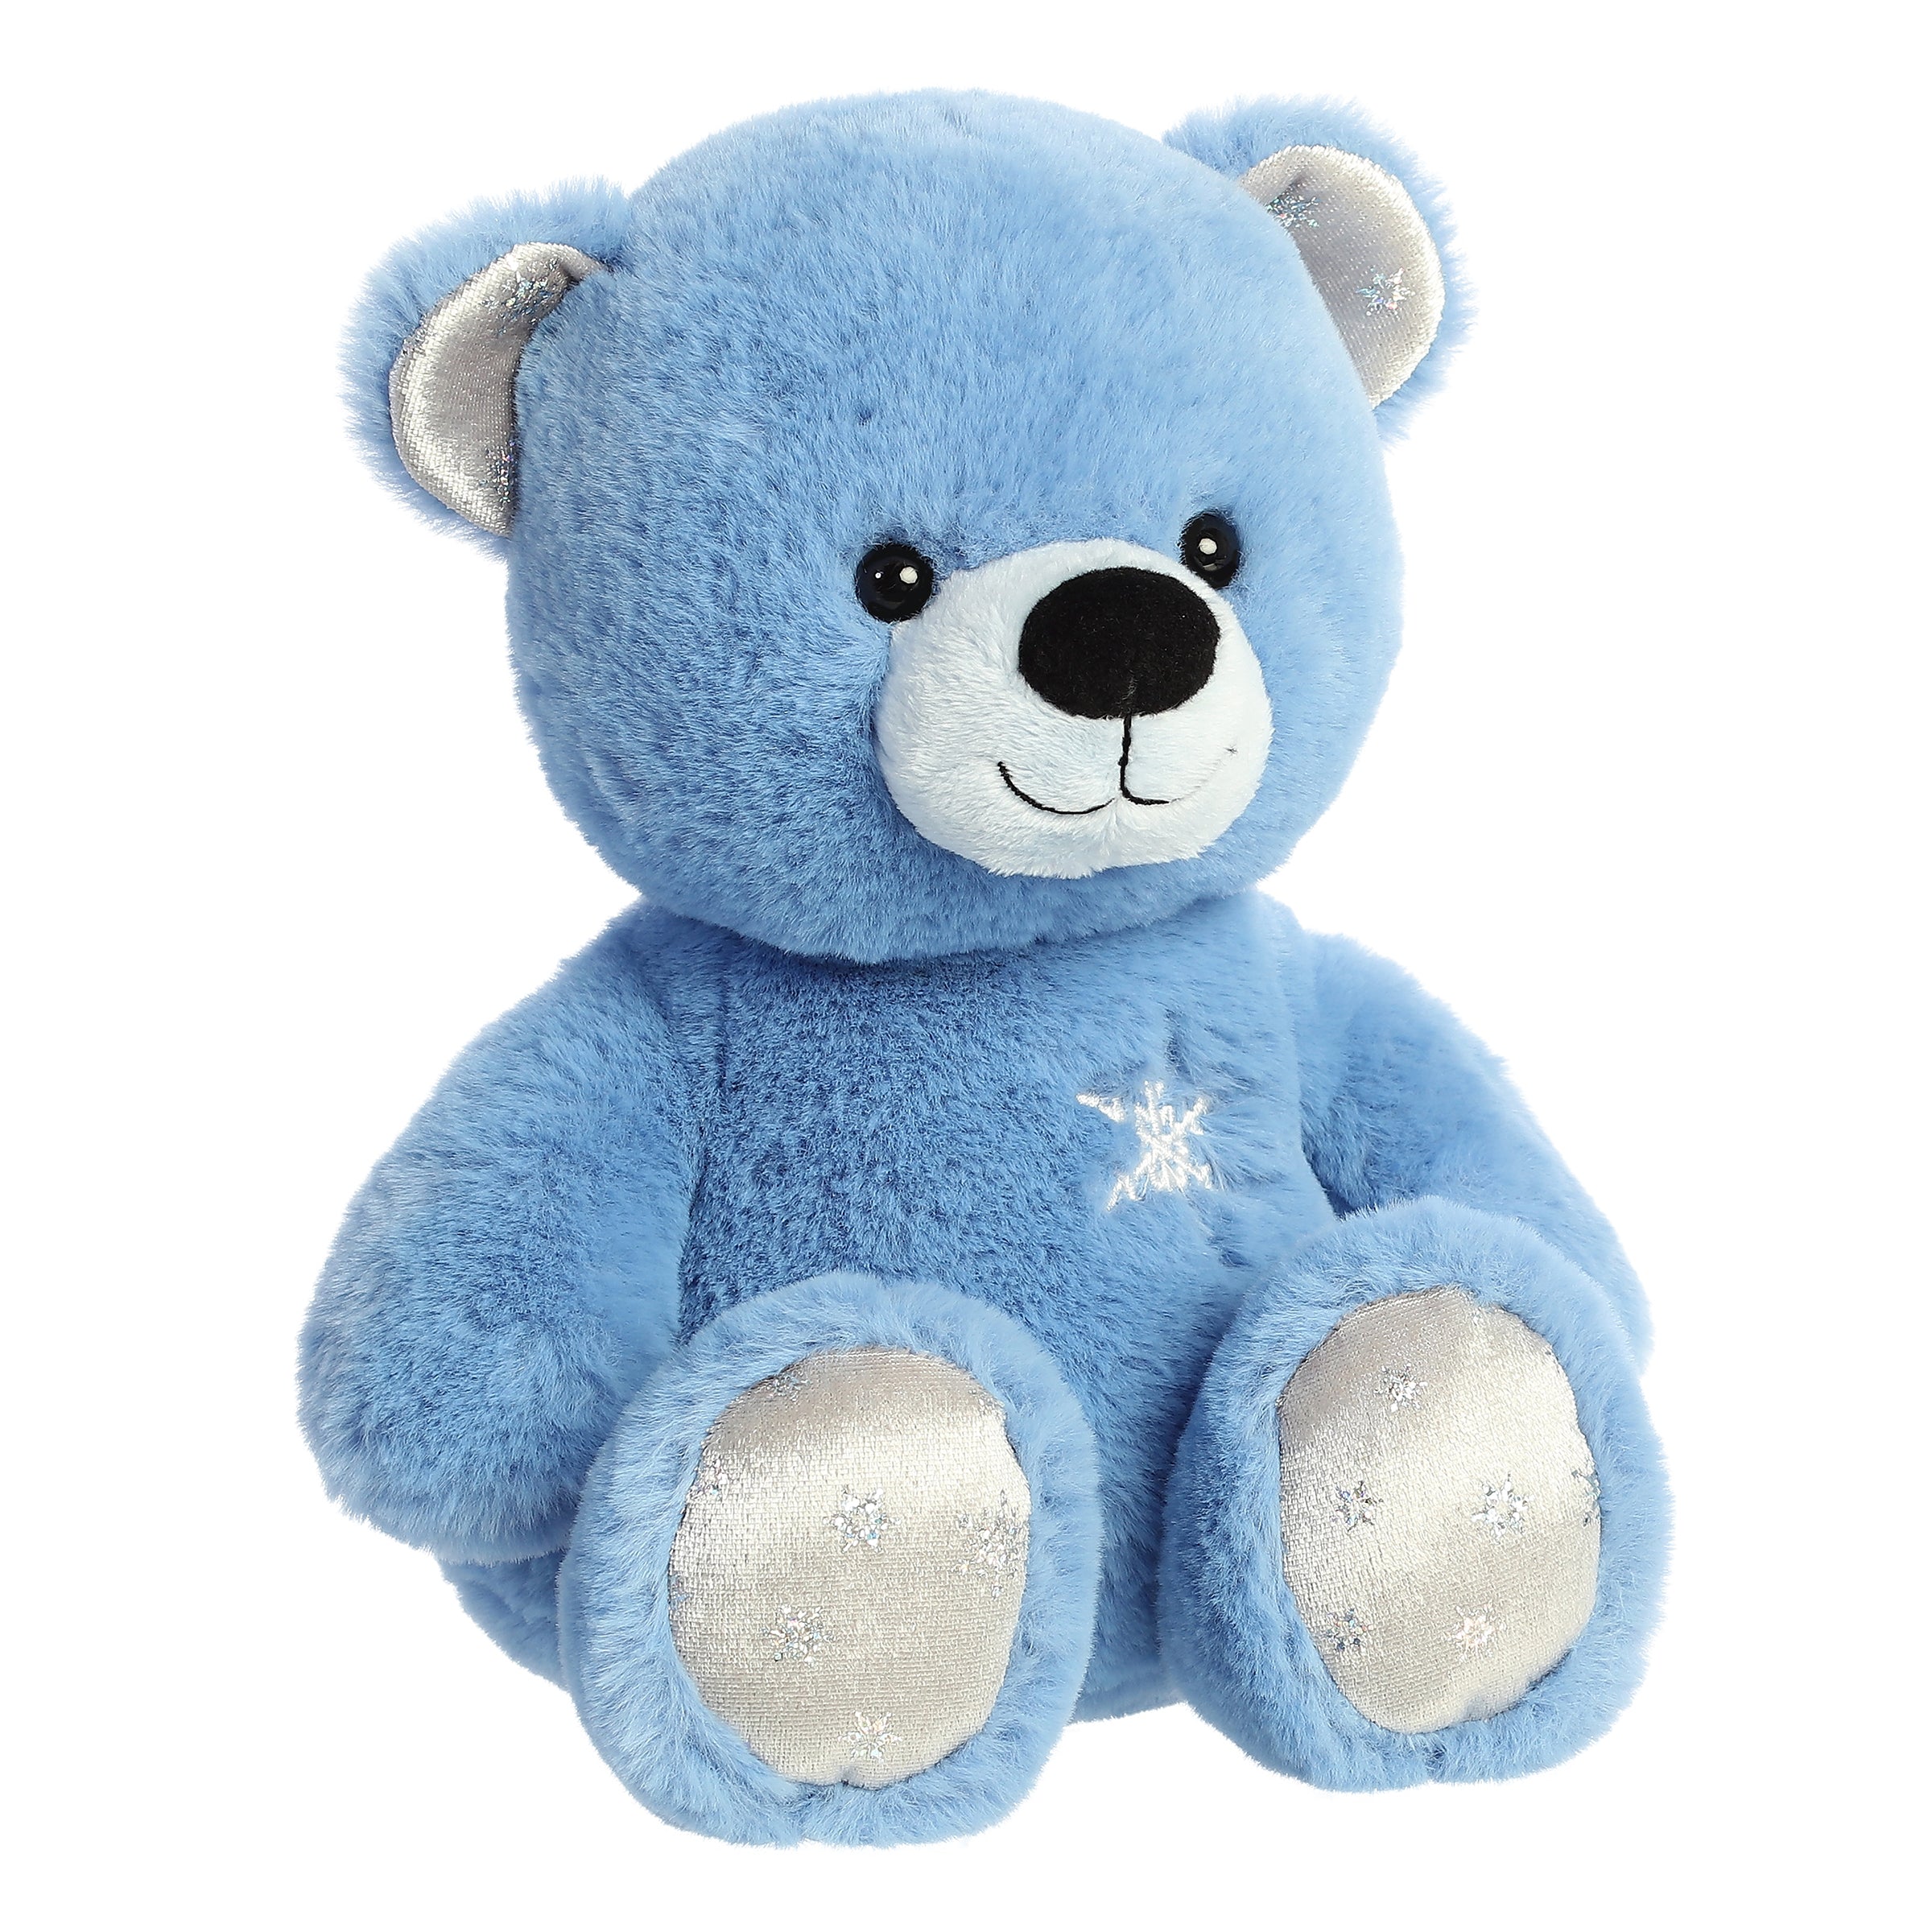 Aurora® - Día festivo - Azure Bear™ de 12"